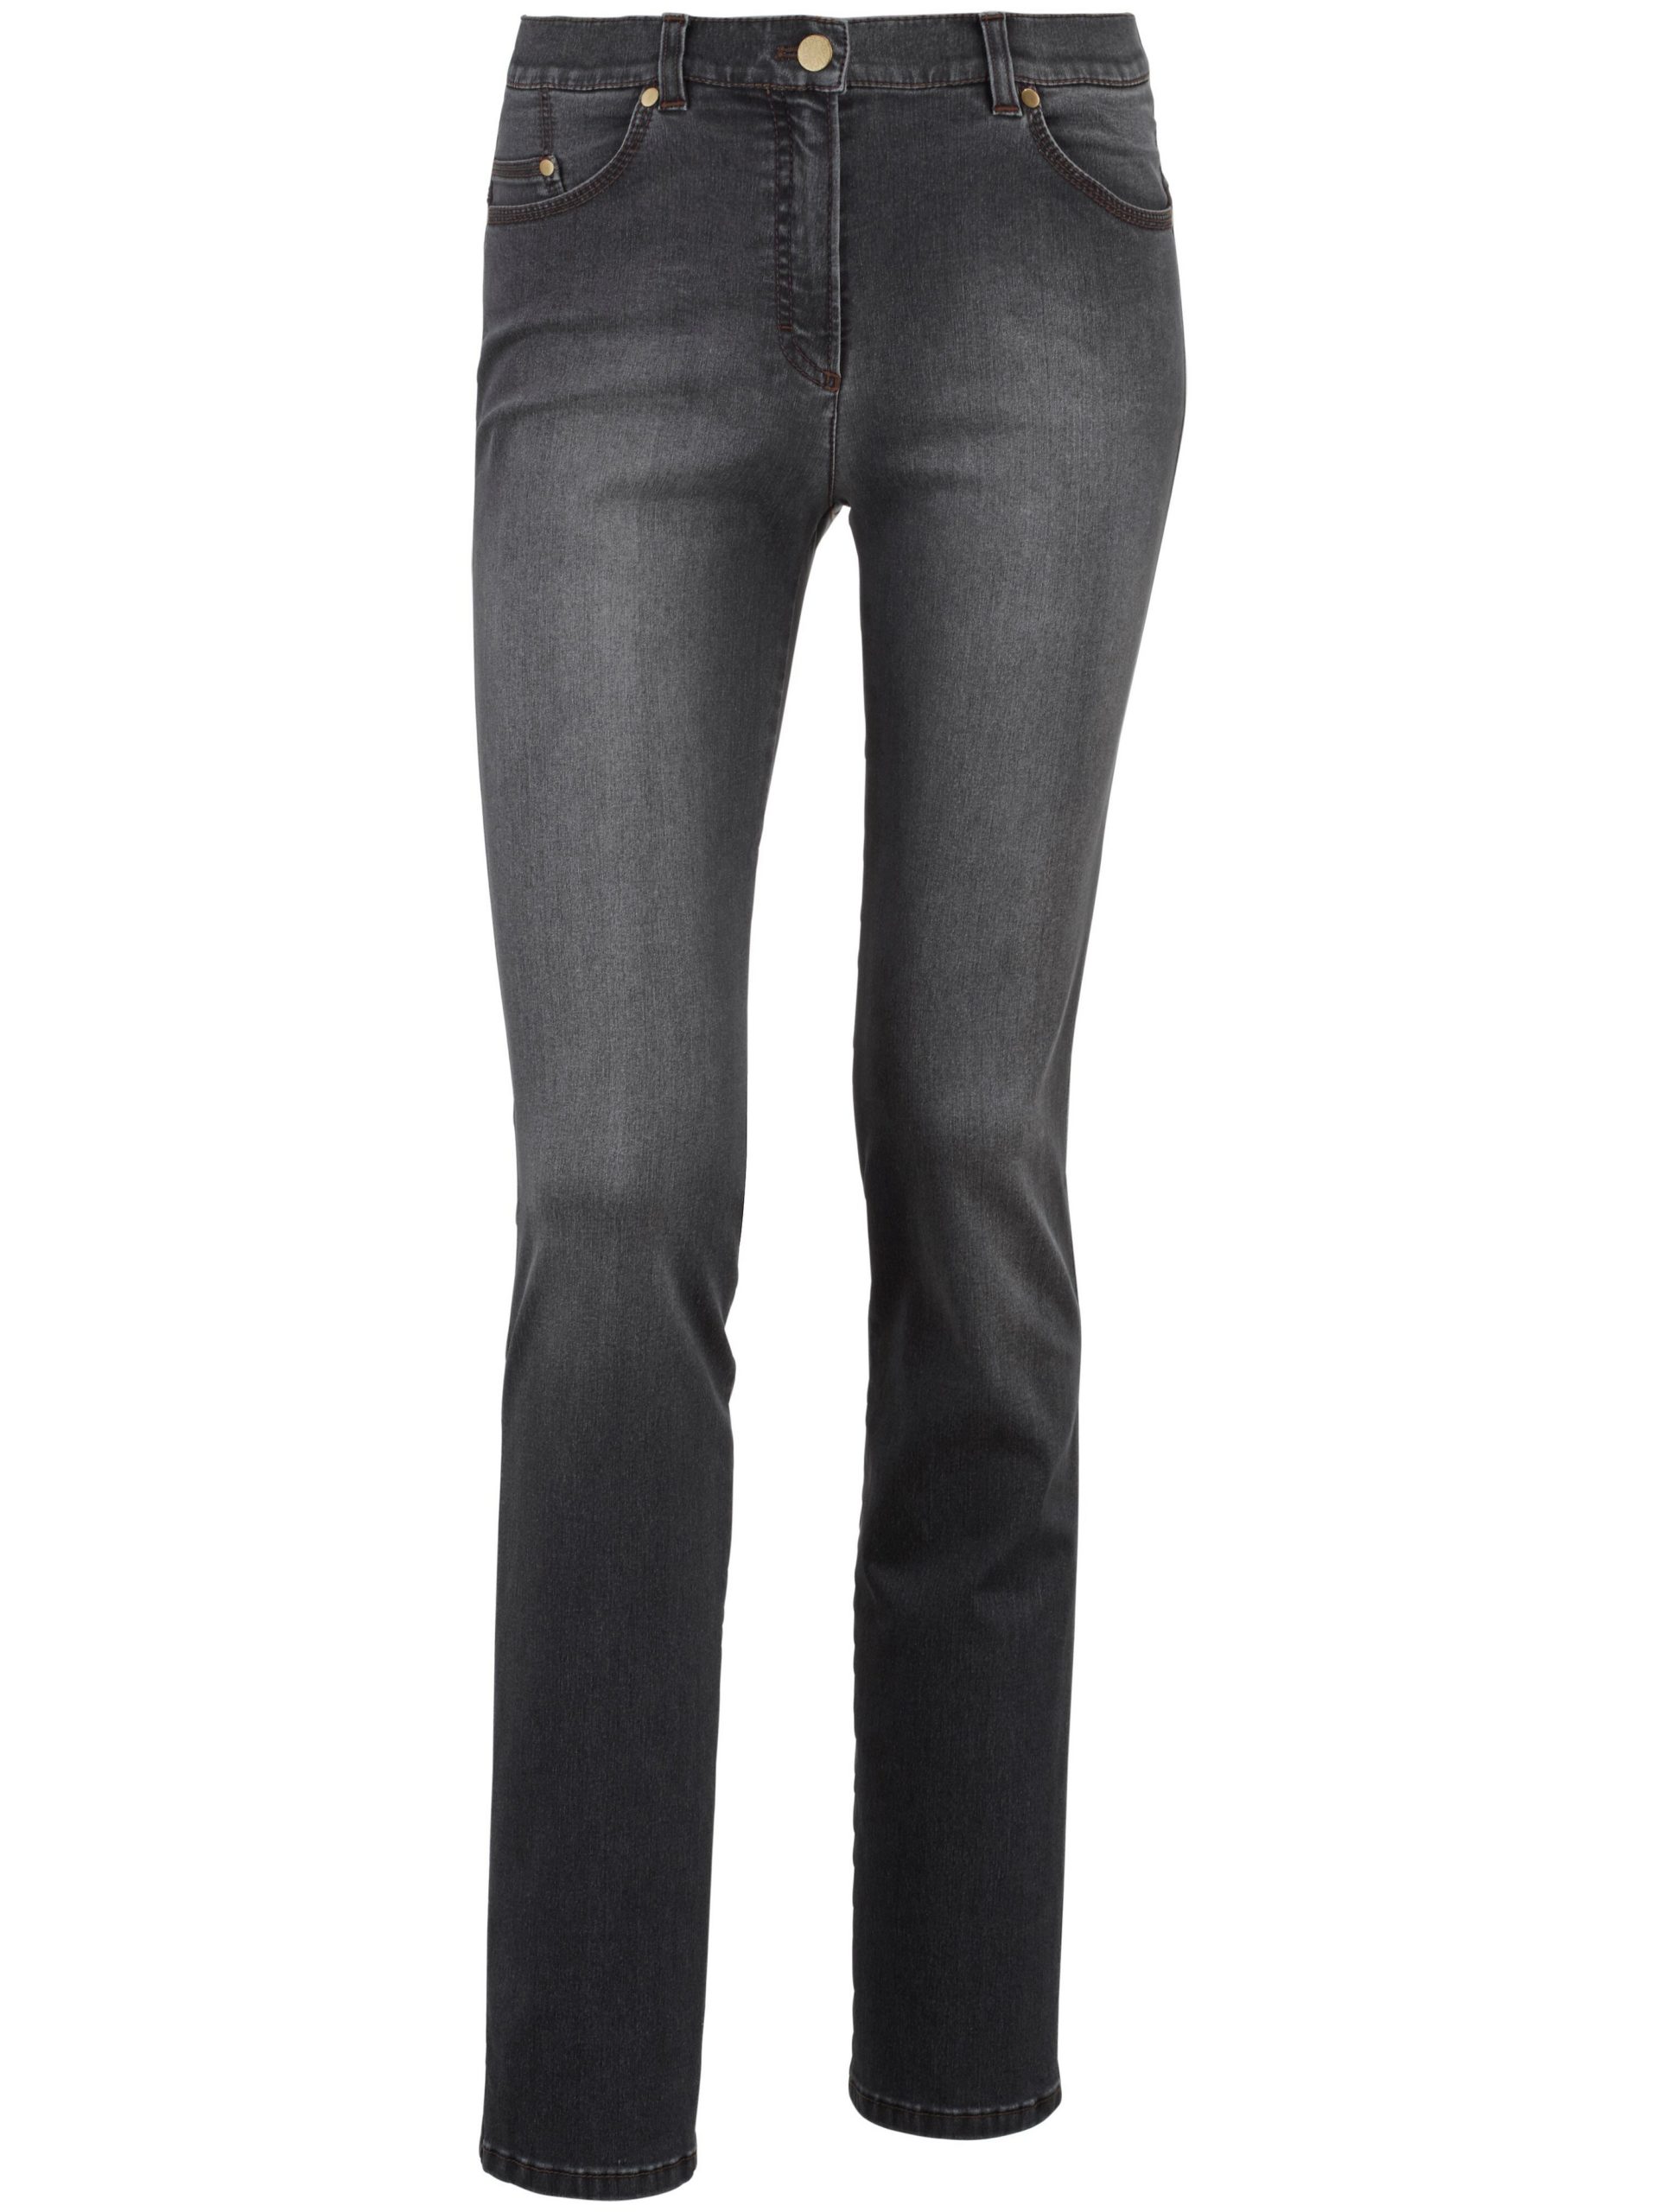 Modellerende Proform S Super Slim-jeans model Lea Van Raphaela by Brax grijs Kopen